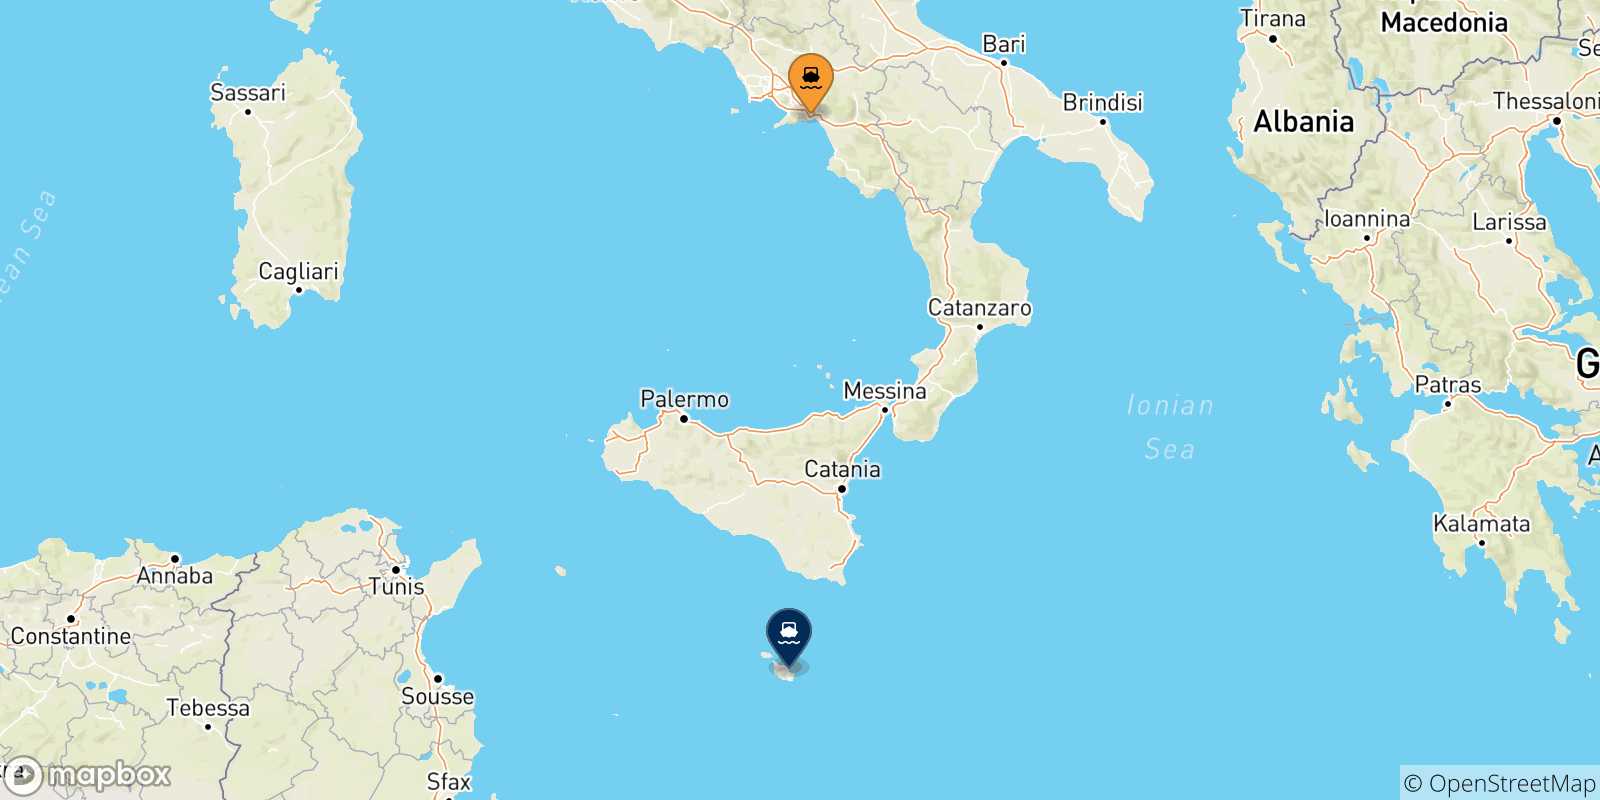 Mappa delle possibili rotte tra Salerno e Malta